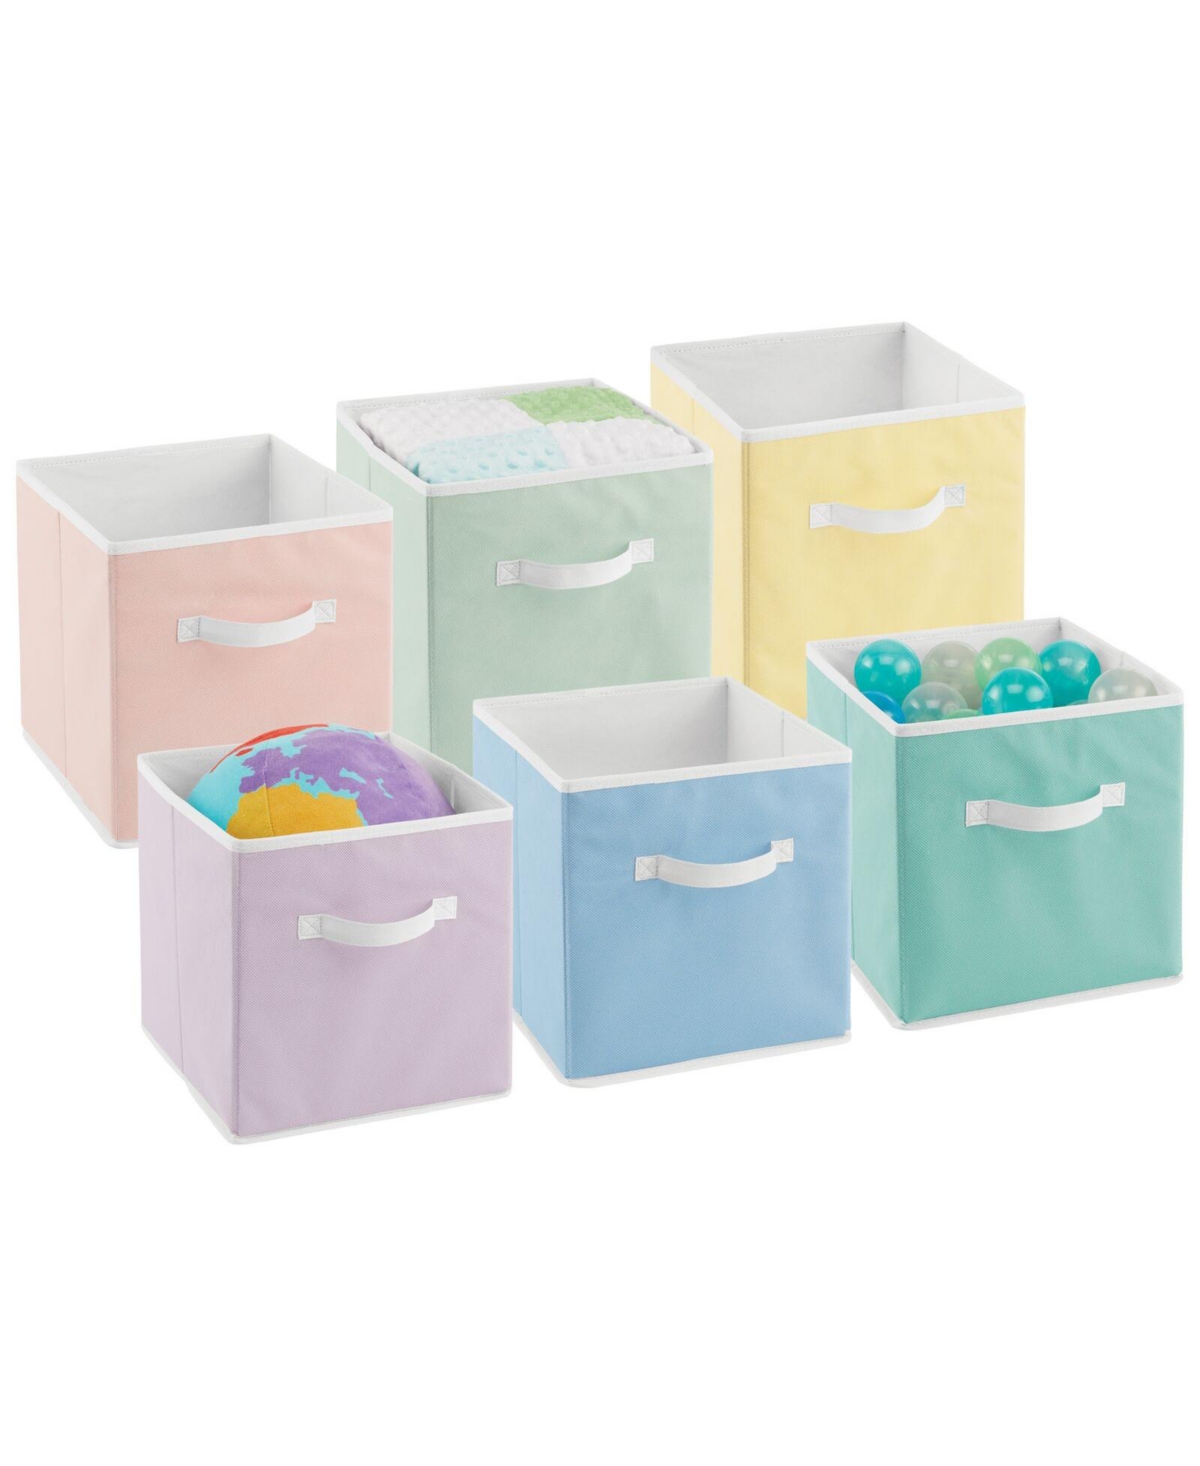 Small Fabric Organizer Cube Bin with Handle, 6 Pack, Bright Multicolor - Bright multi